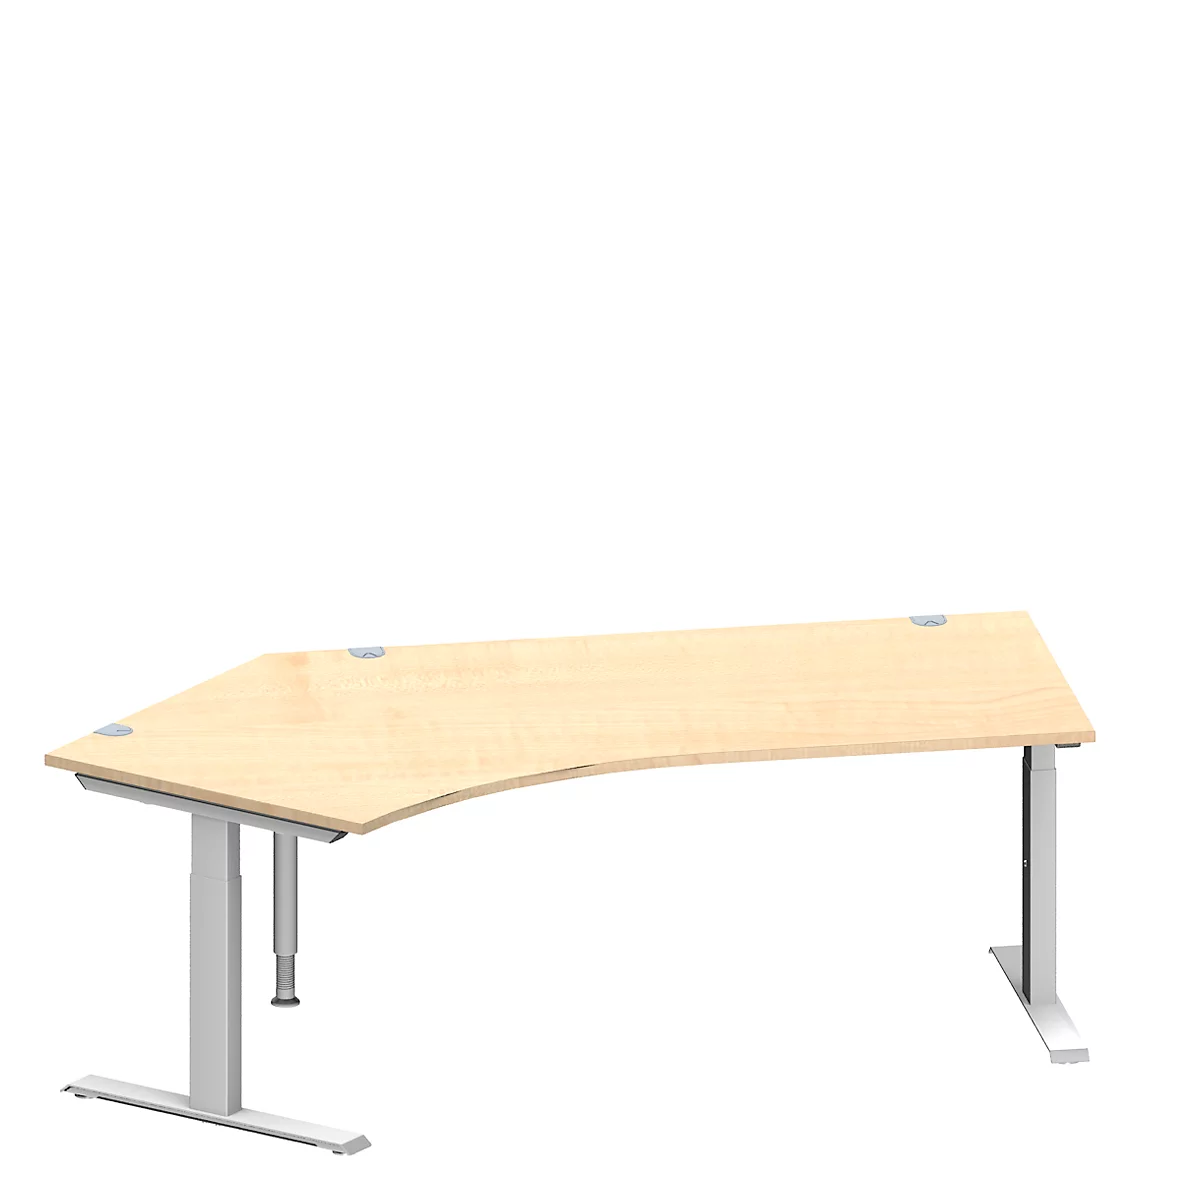 Schäfer Shop Genius escritorio angular MODENA FLEX, ángulo de 135° a la izquierda, tubo rectangular con pie en T, An 2165 x Pr 800/800 x Al 650-850 mm, arce/alu blanco